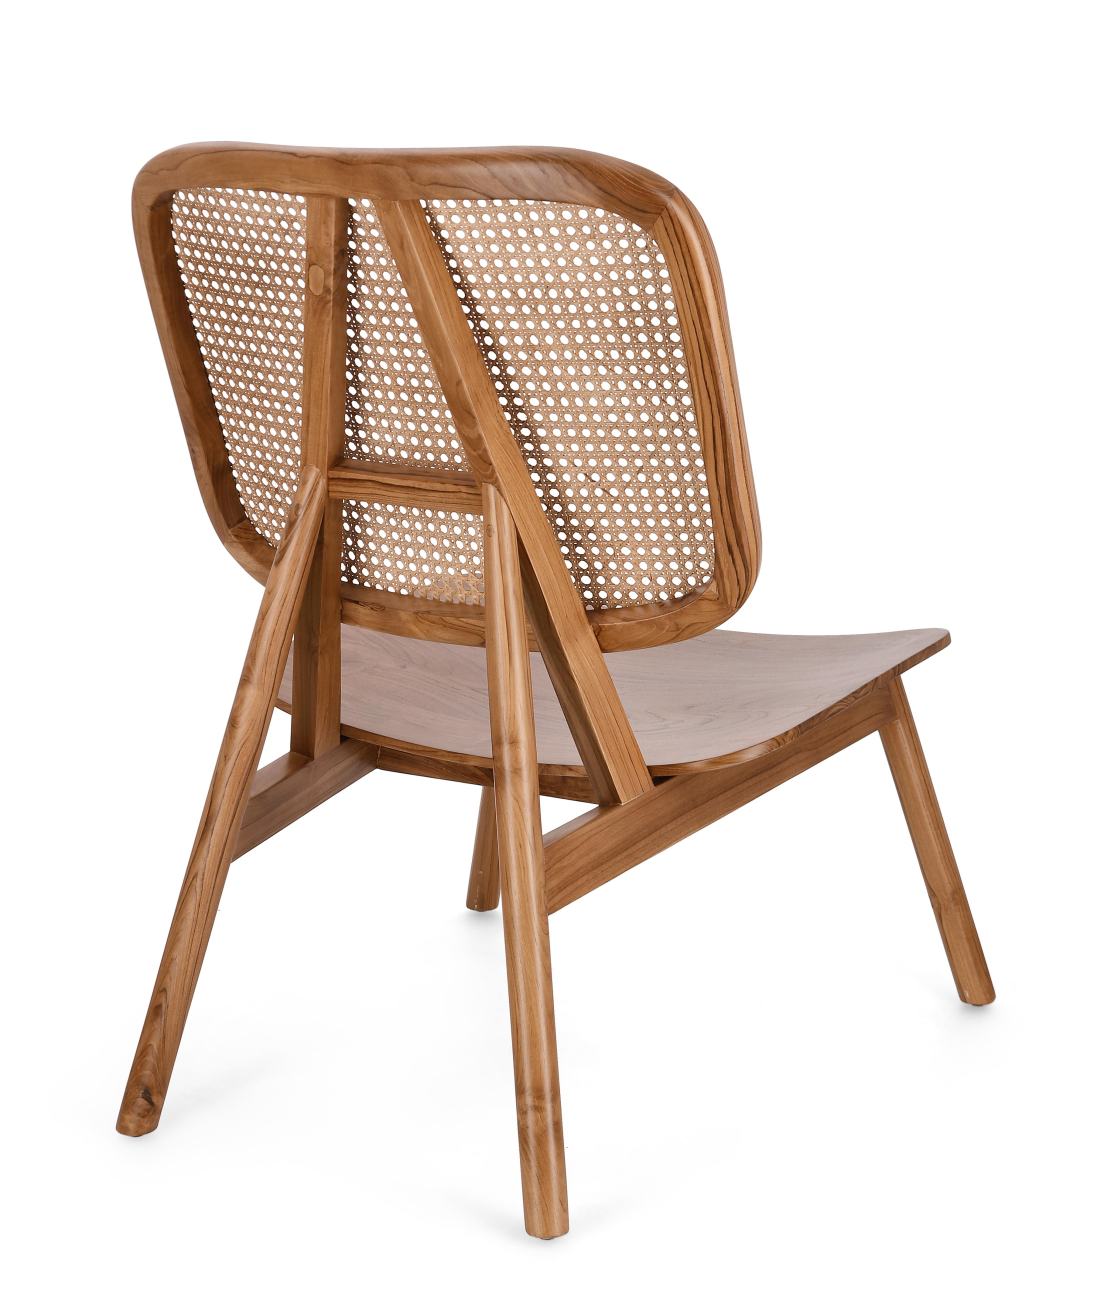 Der Sessel Yves überzeugt mit seinem modernen Stil. Gefertigt wurde er aus Teakholz, welches einen natürlichen Farbton besitzt. Die Rückenlehne ist aus Rattan und hat eine natürliche Farbe. Der Sessel besitzt eine Sitzhöhe von 38 cm.